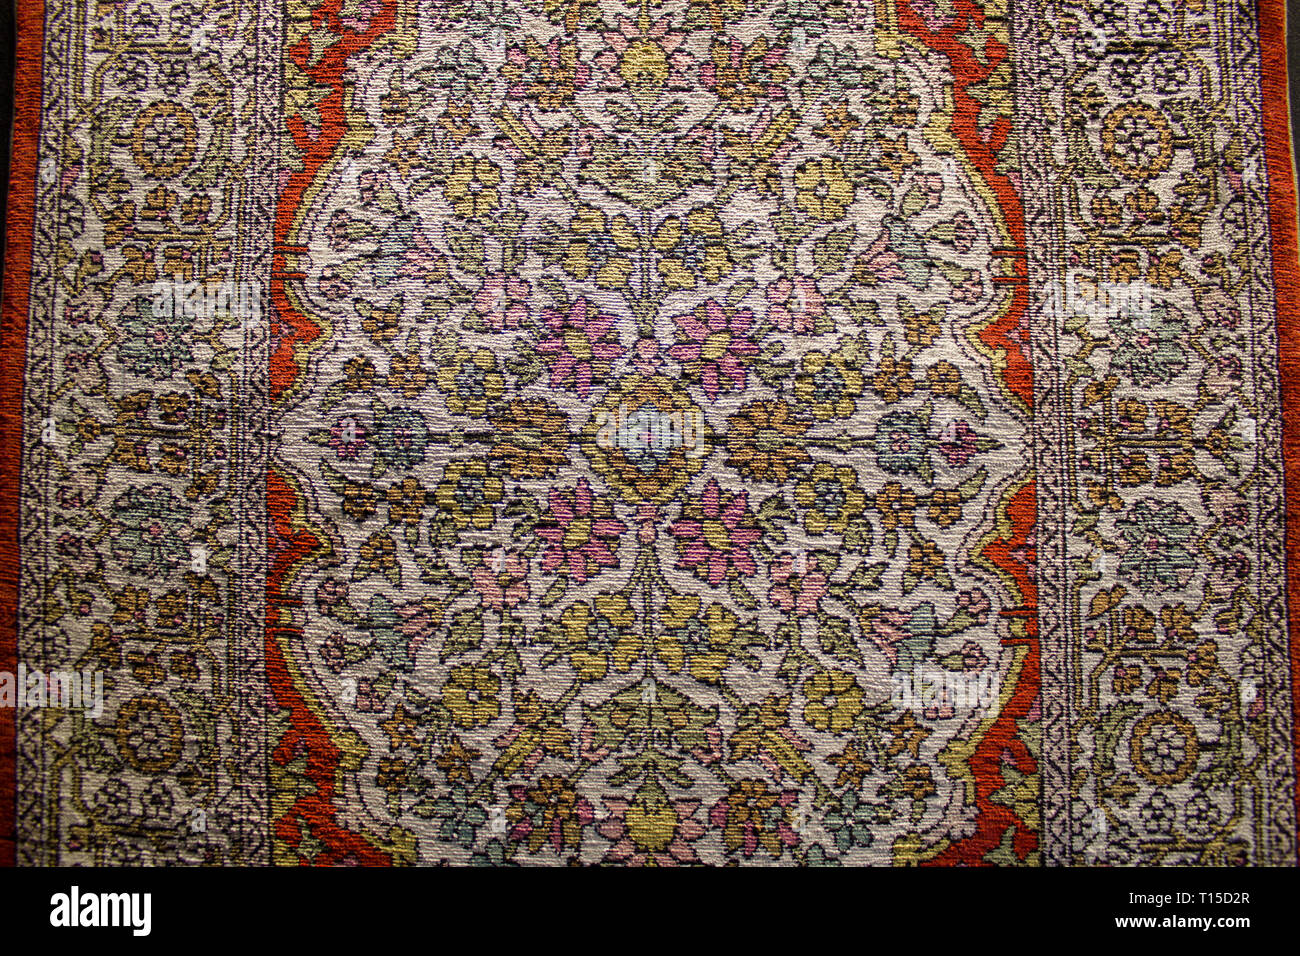 Traditionelle türkische und osmanische handgefertigte Teppiche aus Seide.  Teppich Muster Stockfotografie - Alamy